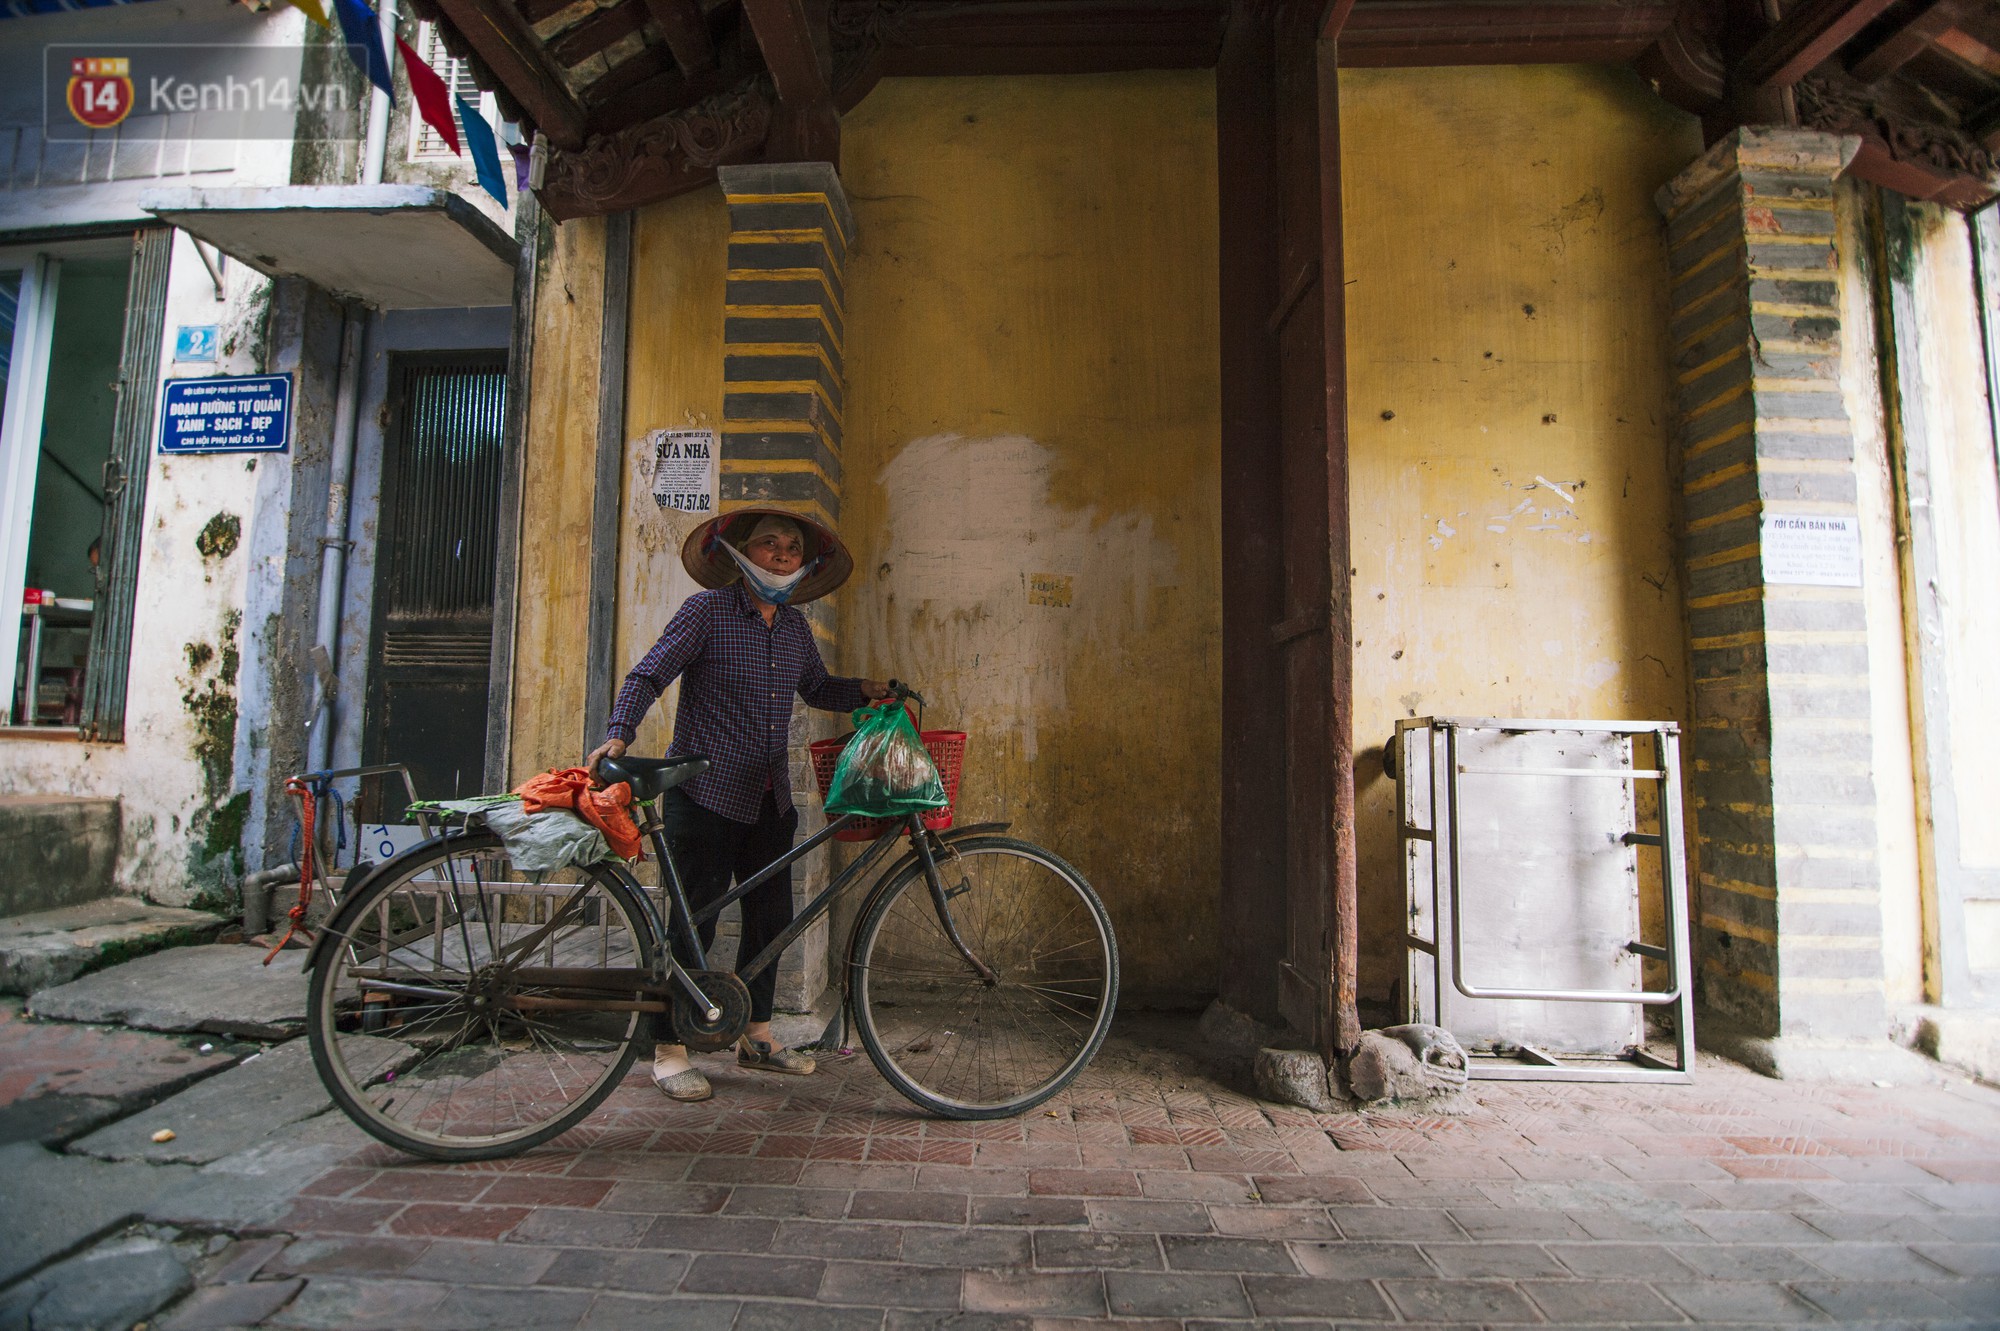 Chuyện về một con phố có nhiều cổng làng nhất Hà Nội: Đưa chân qua cổng phải tôn trọng nếp làng - Ảnh 9.